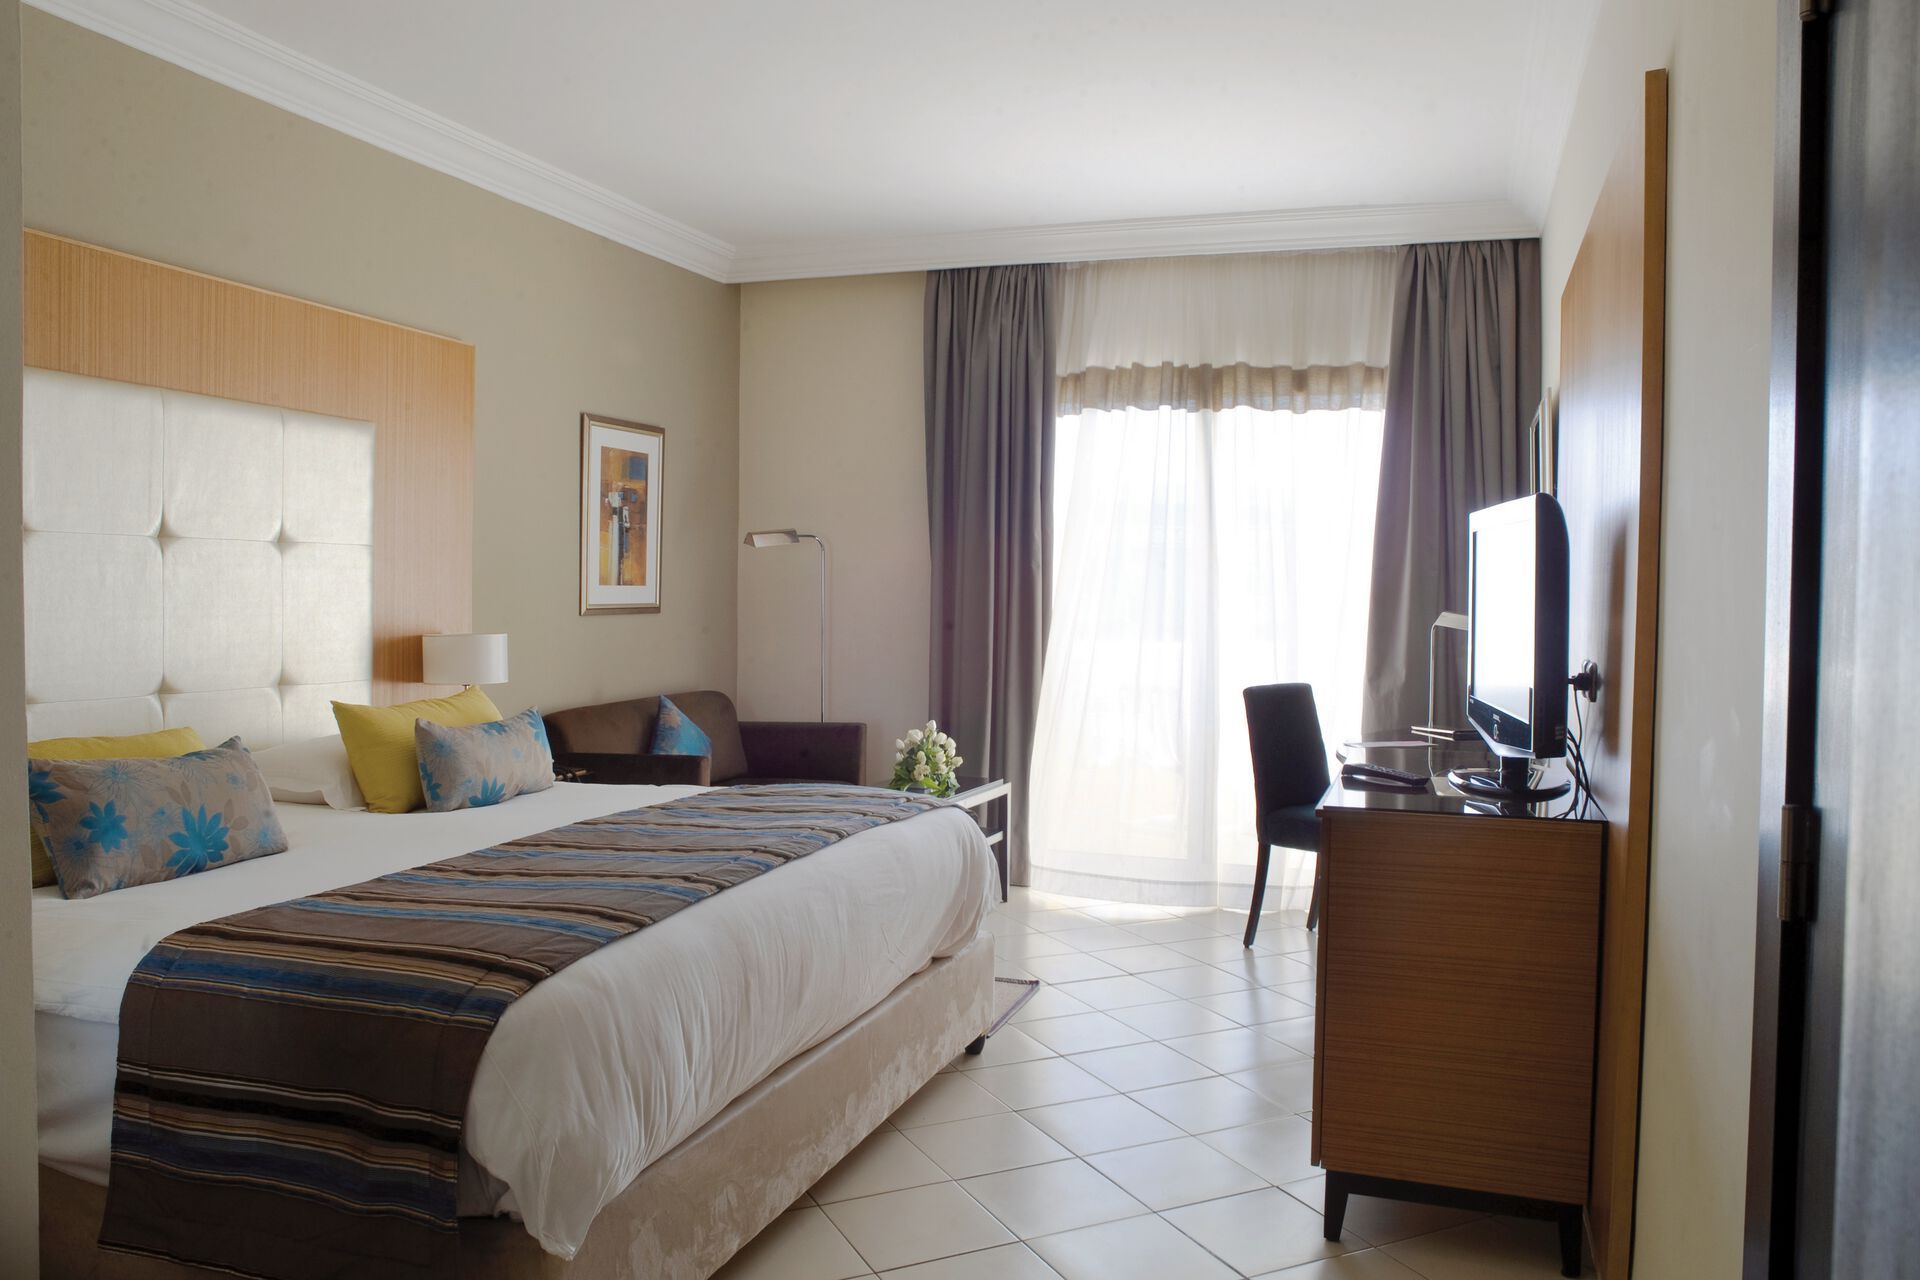 Tunisie - Monastir - Hôtel Royal Thalassa Monastir 5*